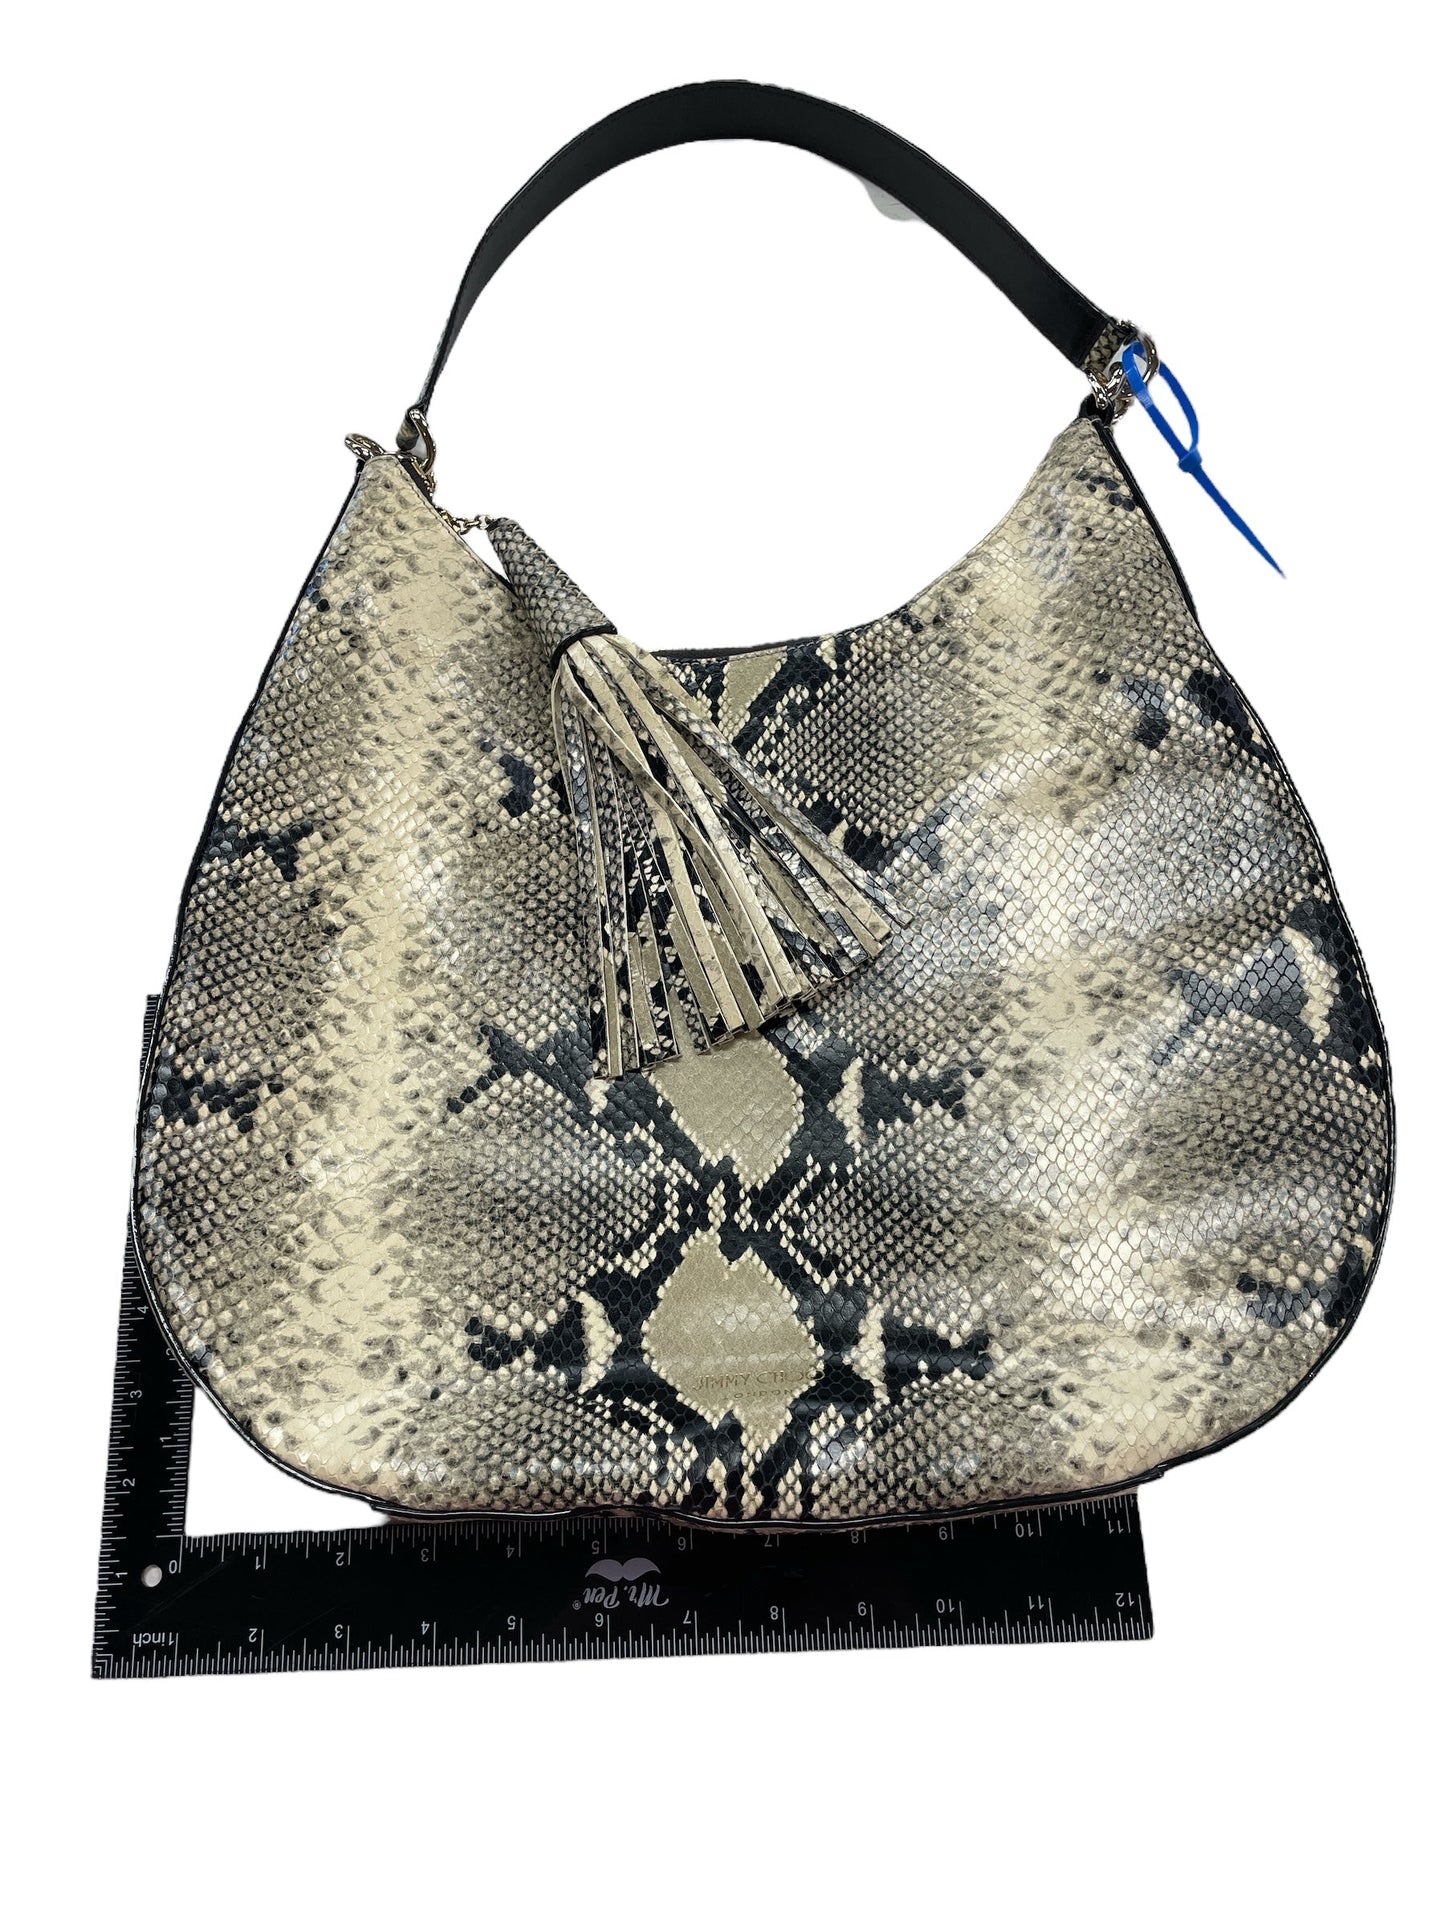 Handbag Designer By Jimmy Choo  Size: Medium